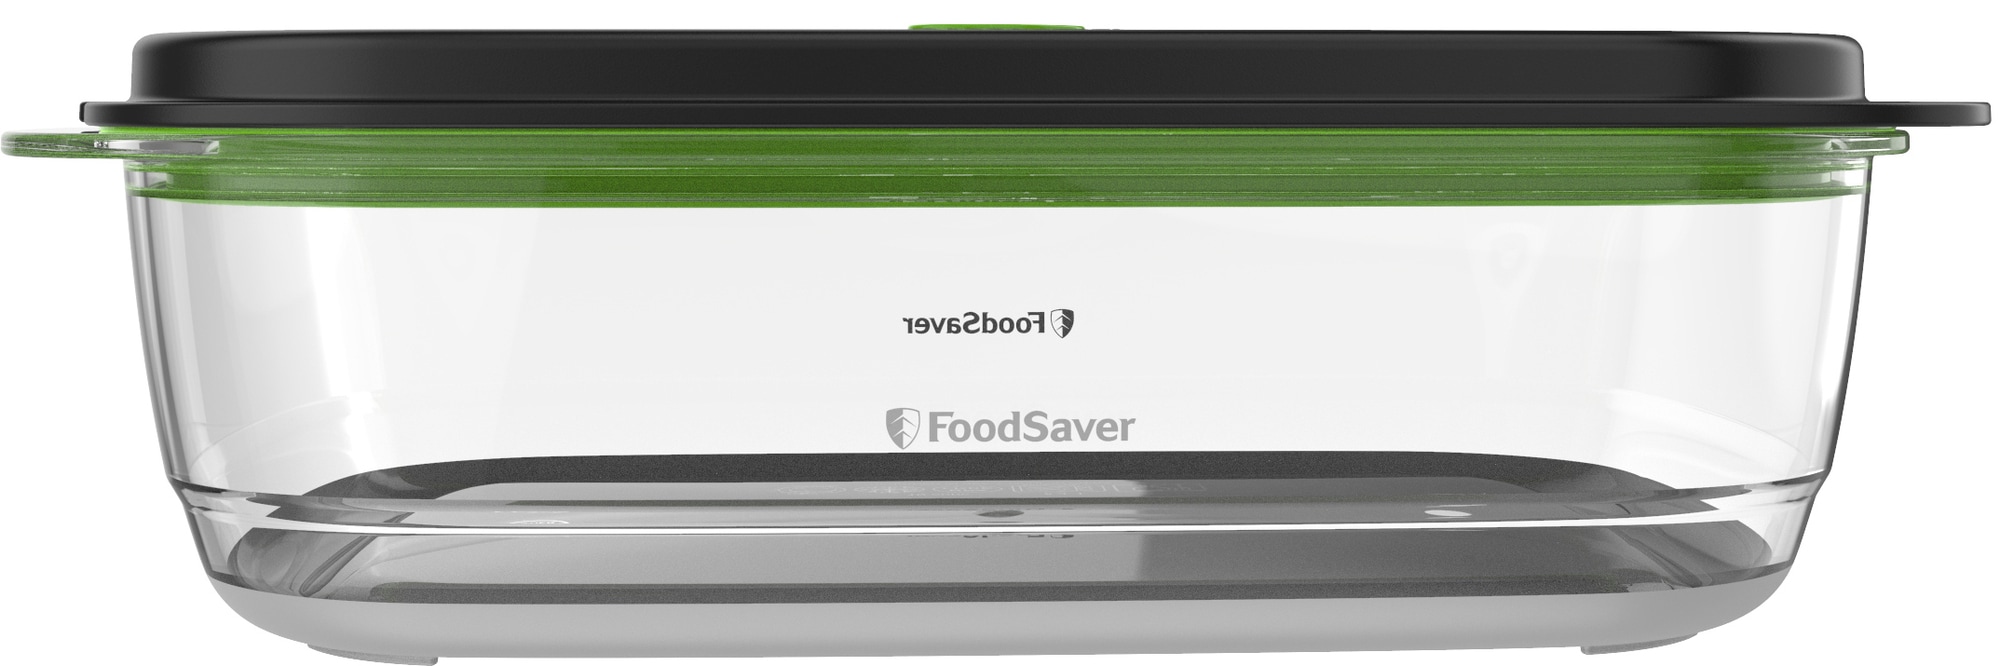 Foodsaver FFC024x Recipiente de envasado al vacío de alimentos Transparente/Negro 